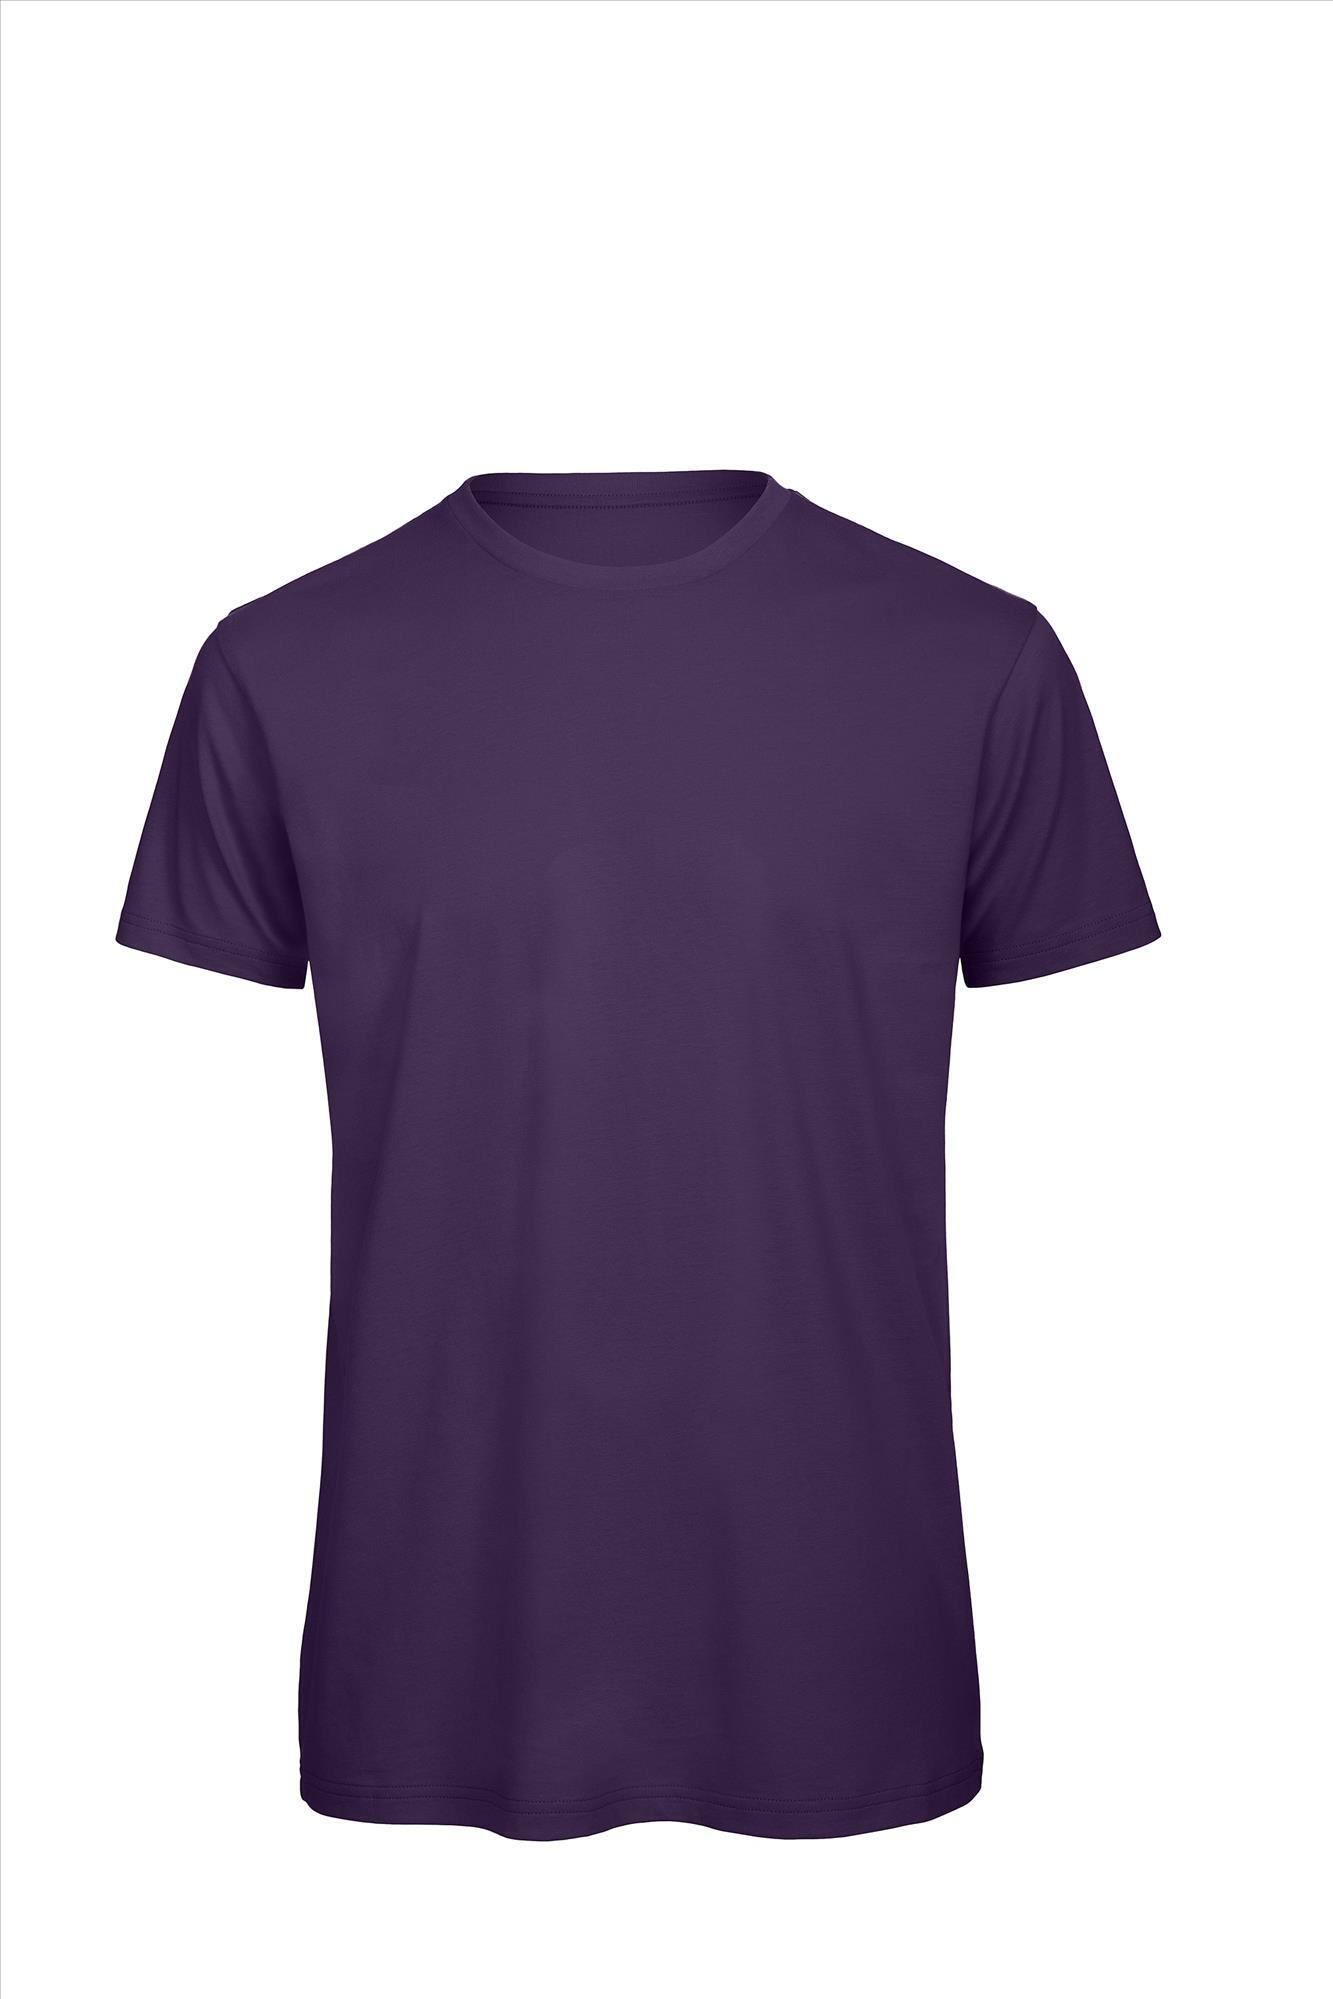 Heren T-shirt urban paars te personaliseren bedrukbaar duurzaam shirt